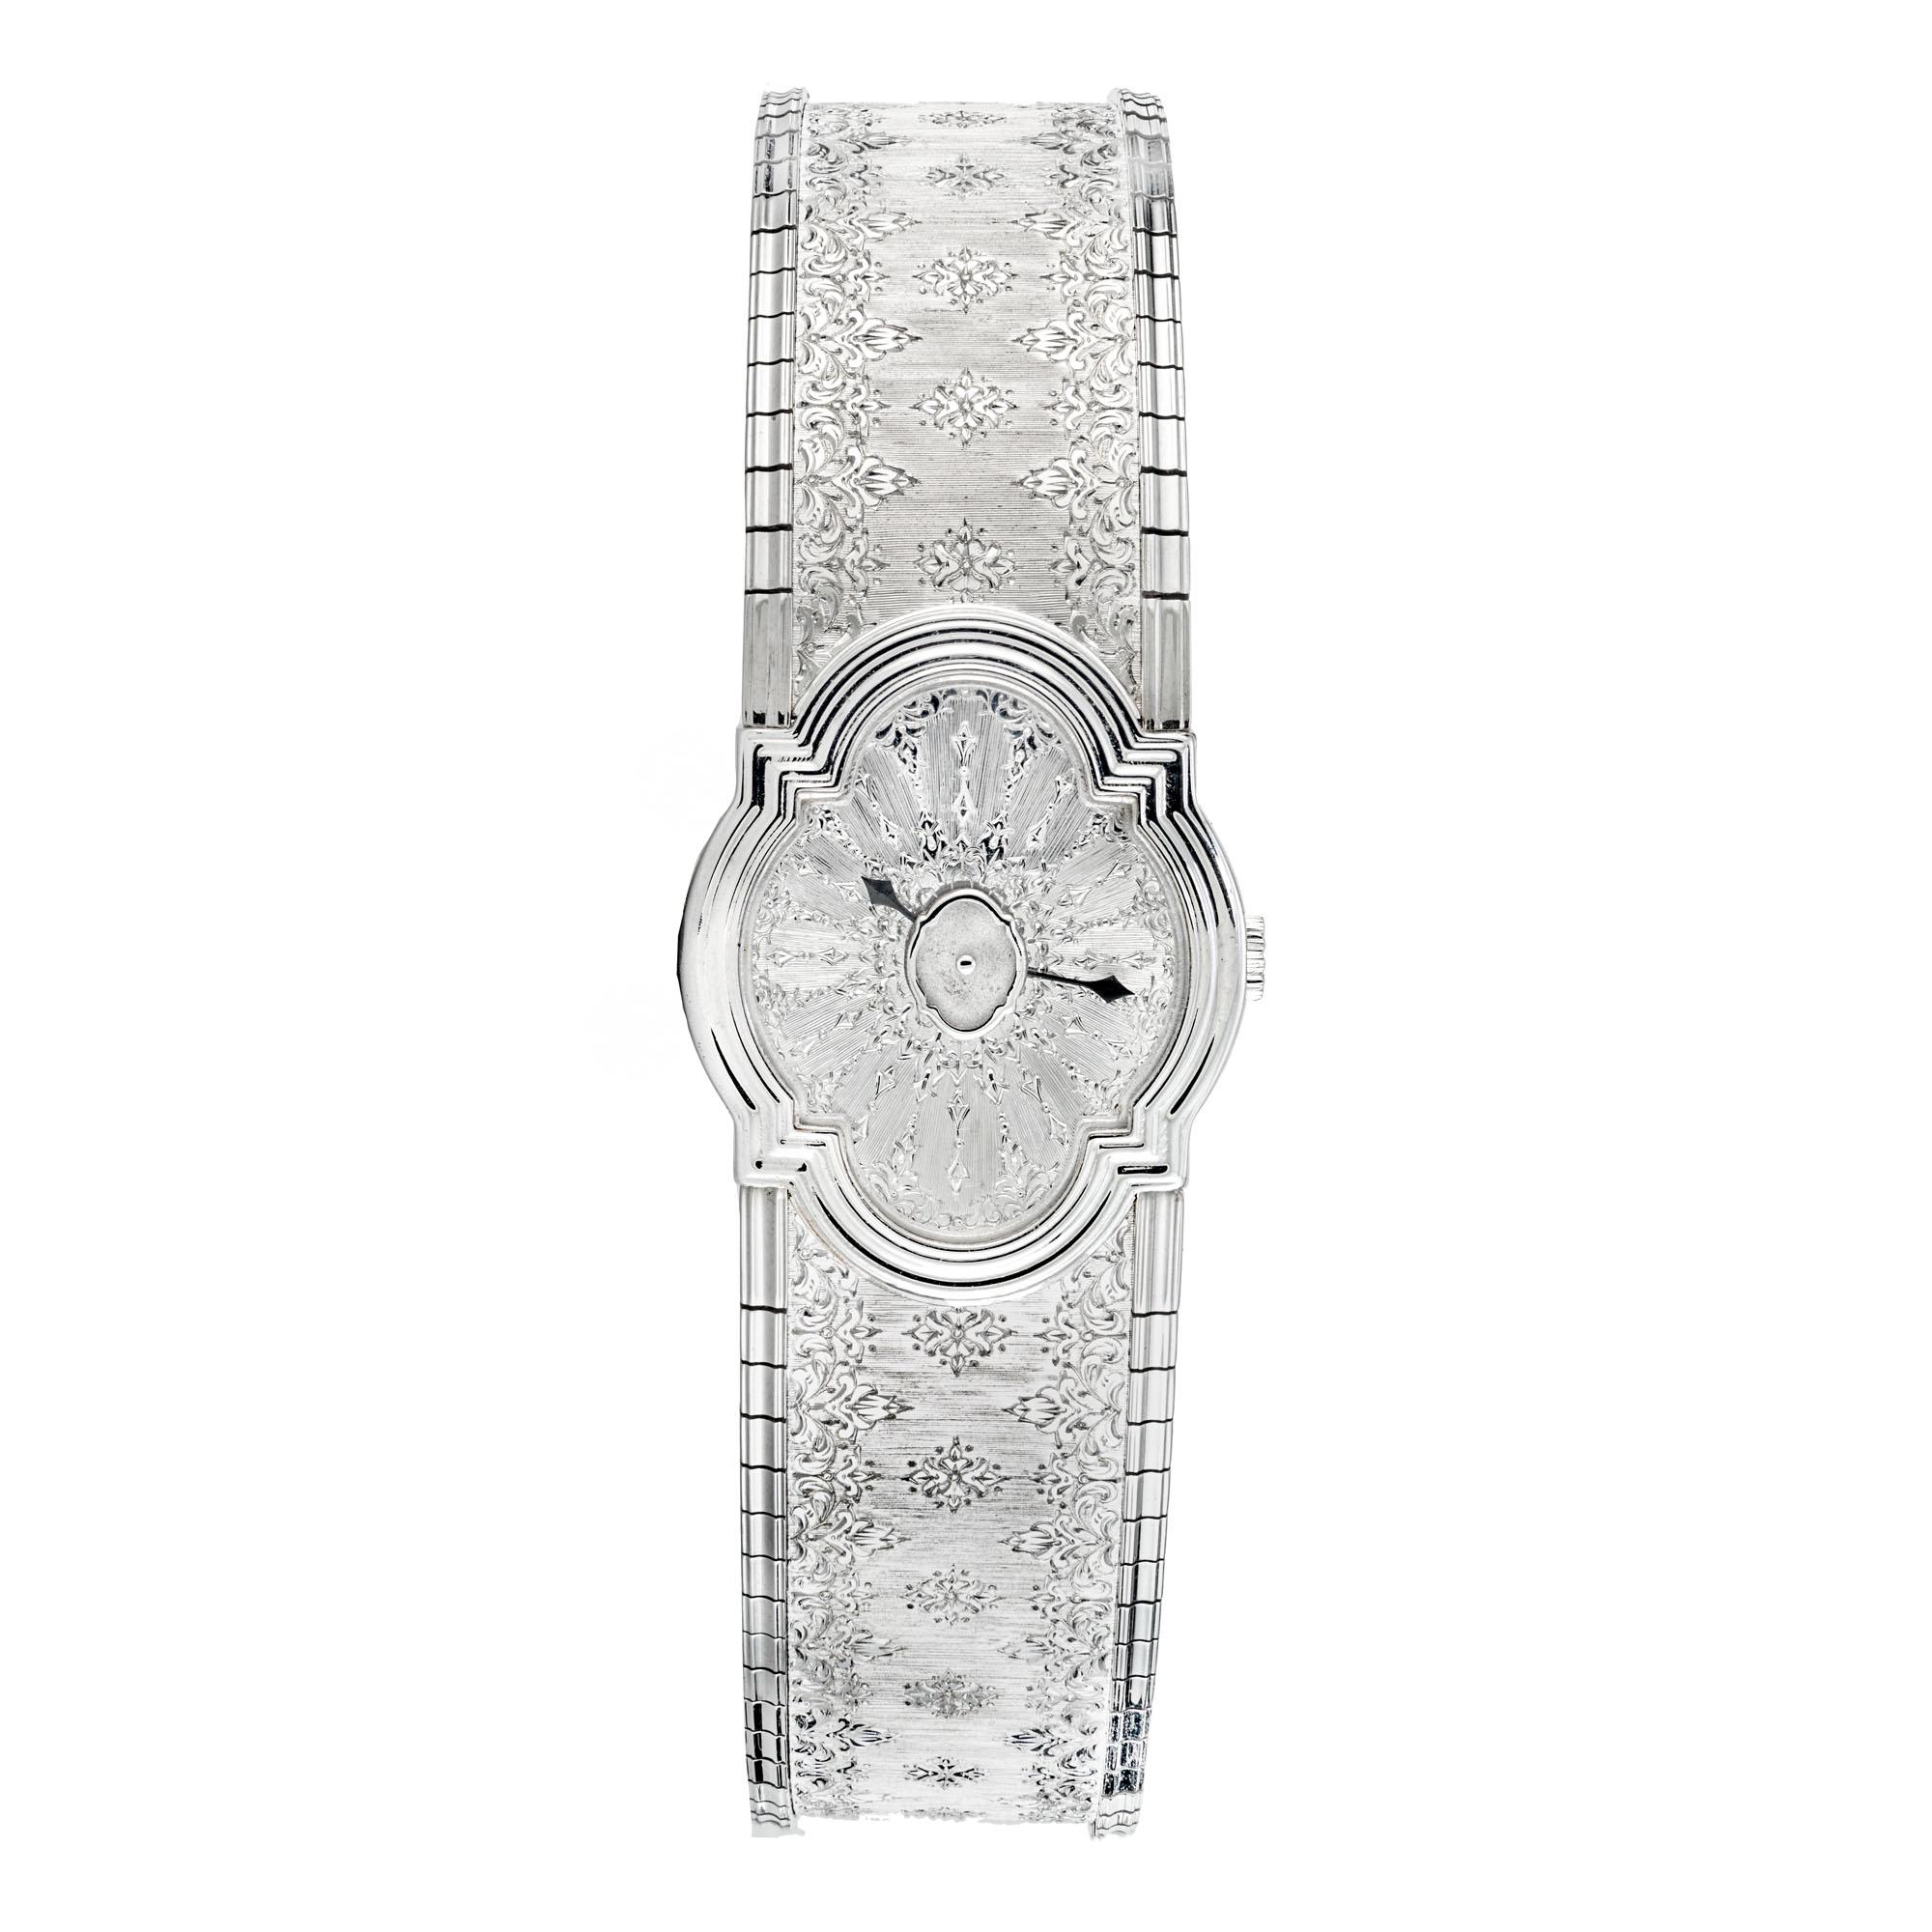 Buccellati Ladies Arischron Montre-bracelet en or blanc 18 carats. Numéro 008 d'une série de seulement 100 montres. La production de ces 100 montres comprenait de l'or blanc et jaune. 7 pouces de long. Le design Arischron est un exemple parfait de